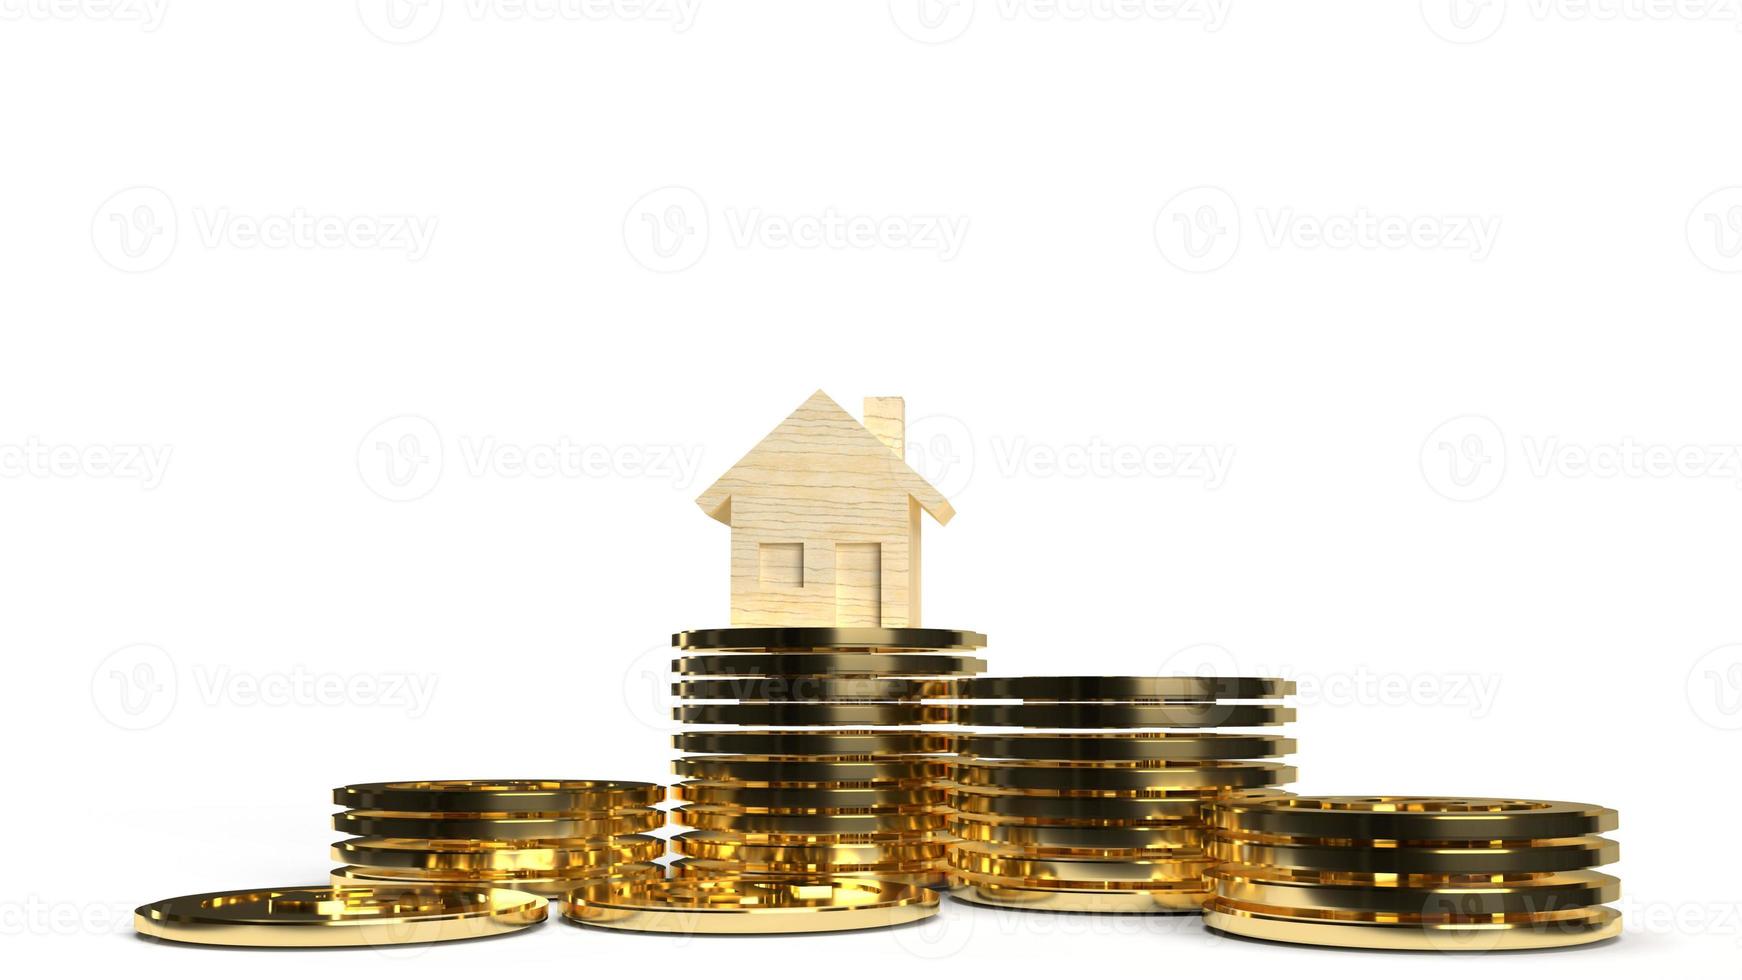 de home houten gouden munten groep 3D-rendering op witte achtergrond voor de inhoud van onroerend goed. foto